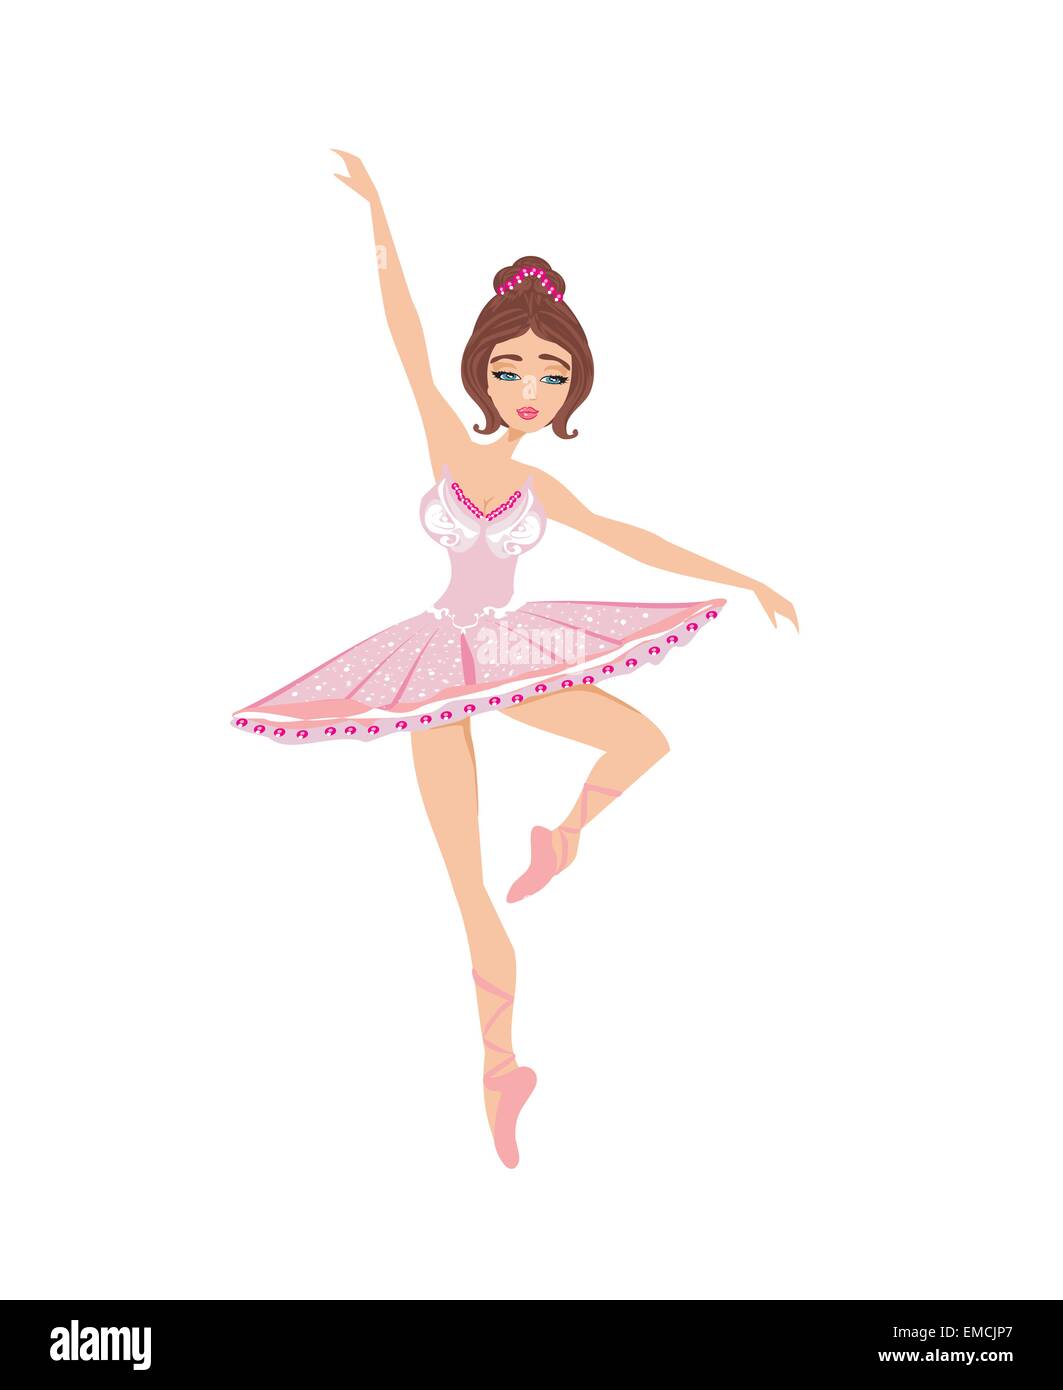 Disegno di ballerina Immagini Vettoriali Stock - Alamy